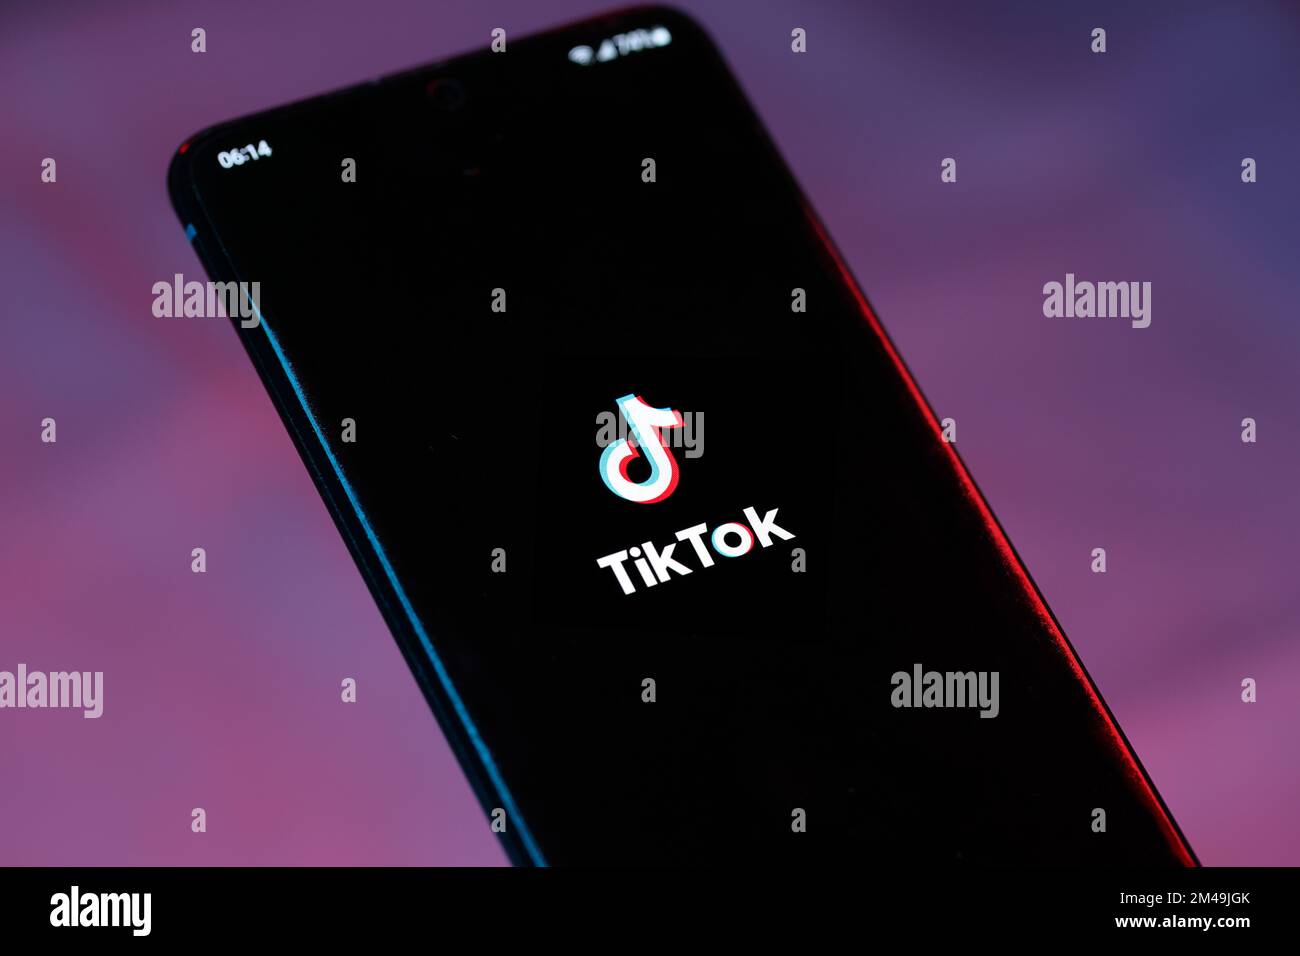 The TikTok logo on a smartphone. TikTok is a short form video social media company by ByteDance. Stock Photo